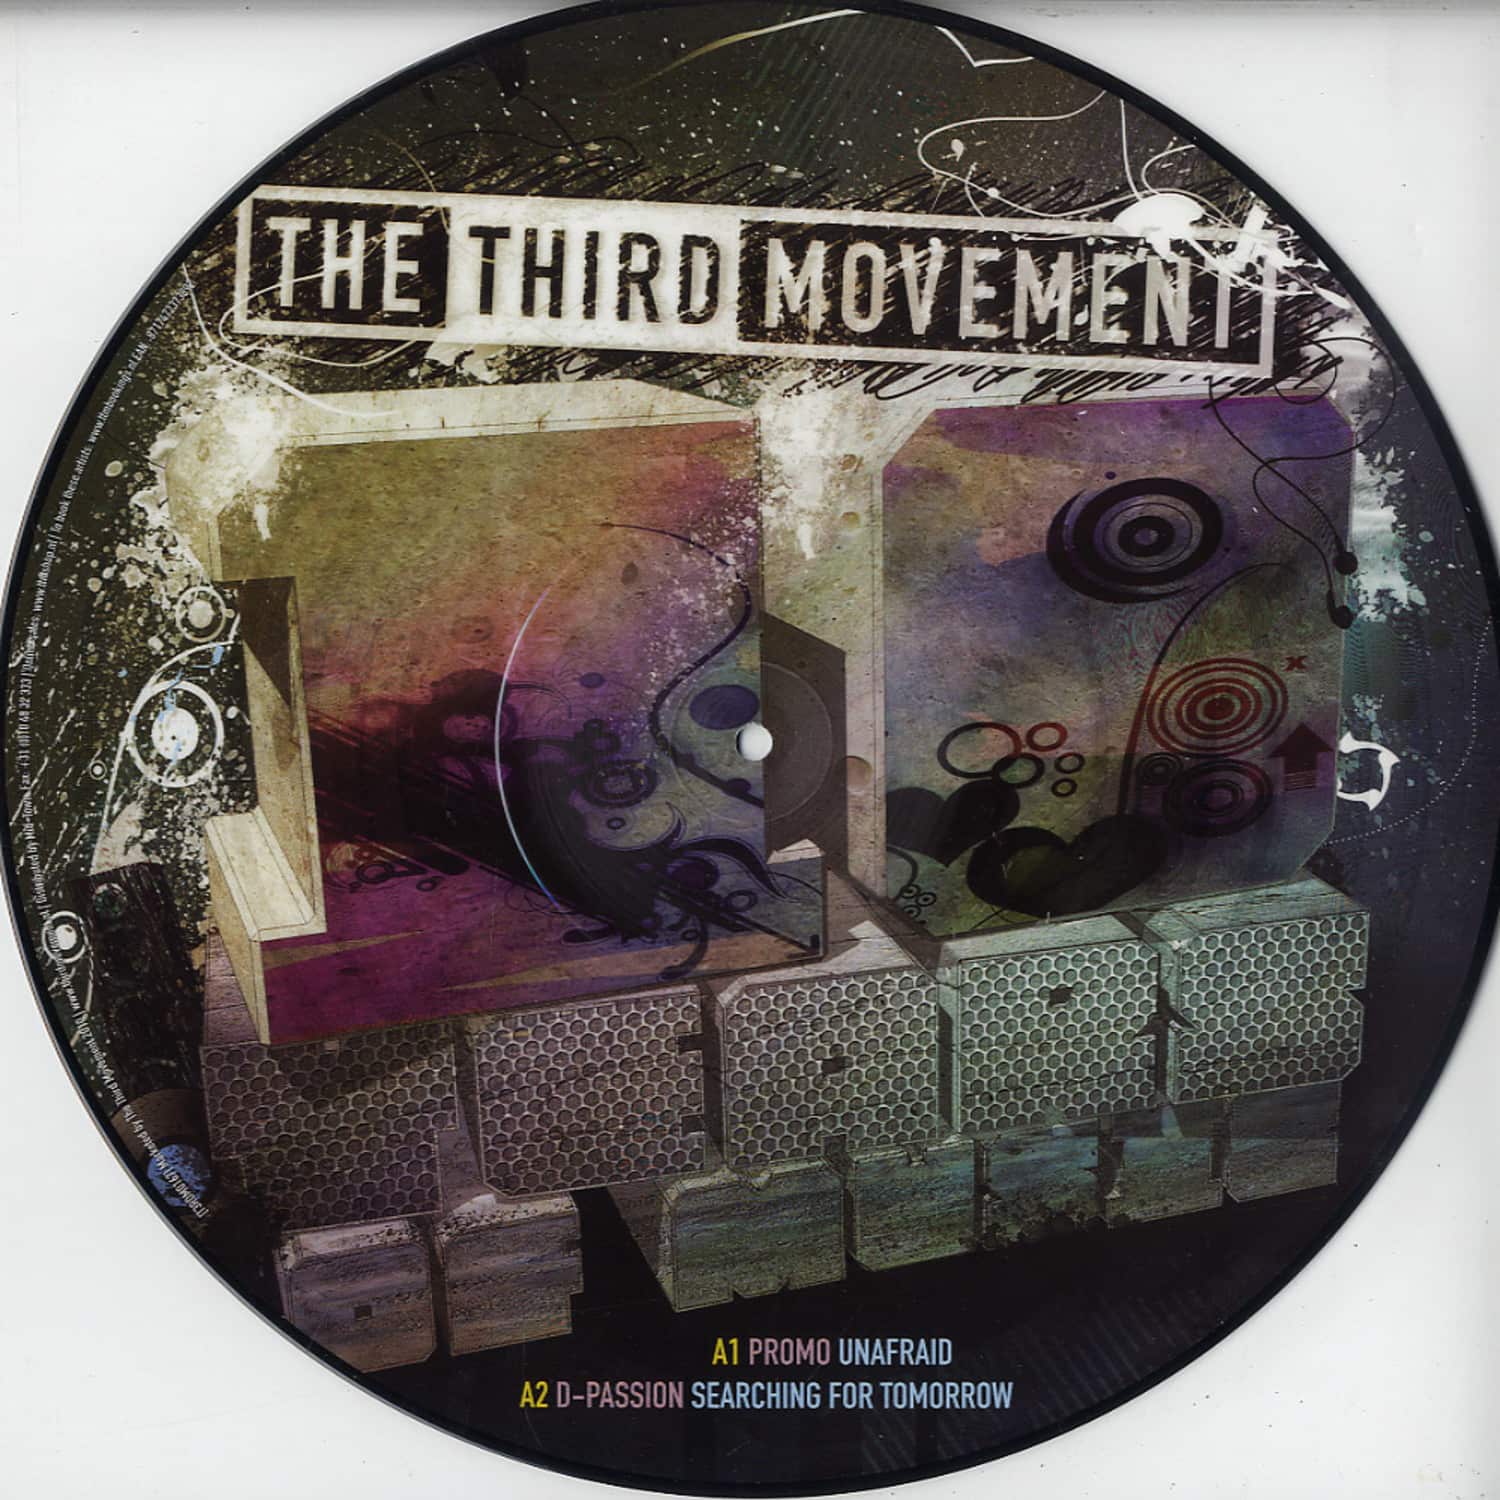 The Third Movement - 10 YEARS OF MUSIC 